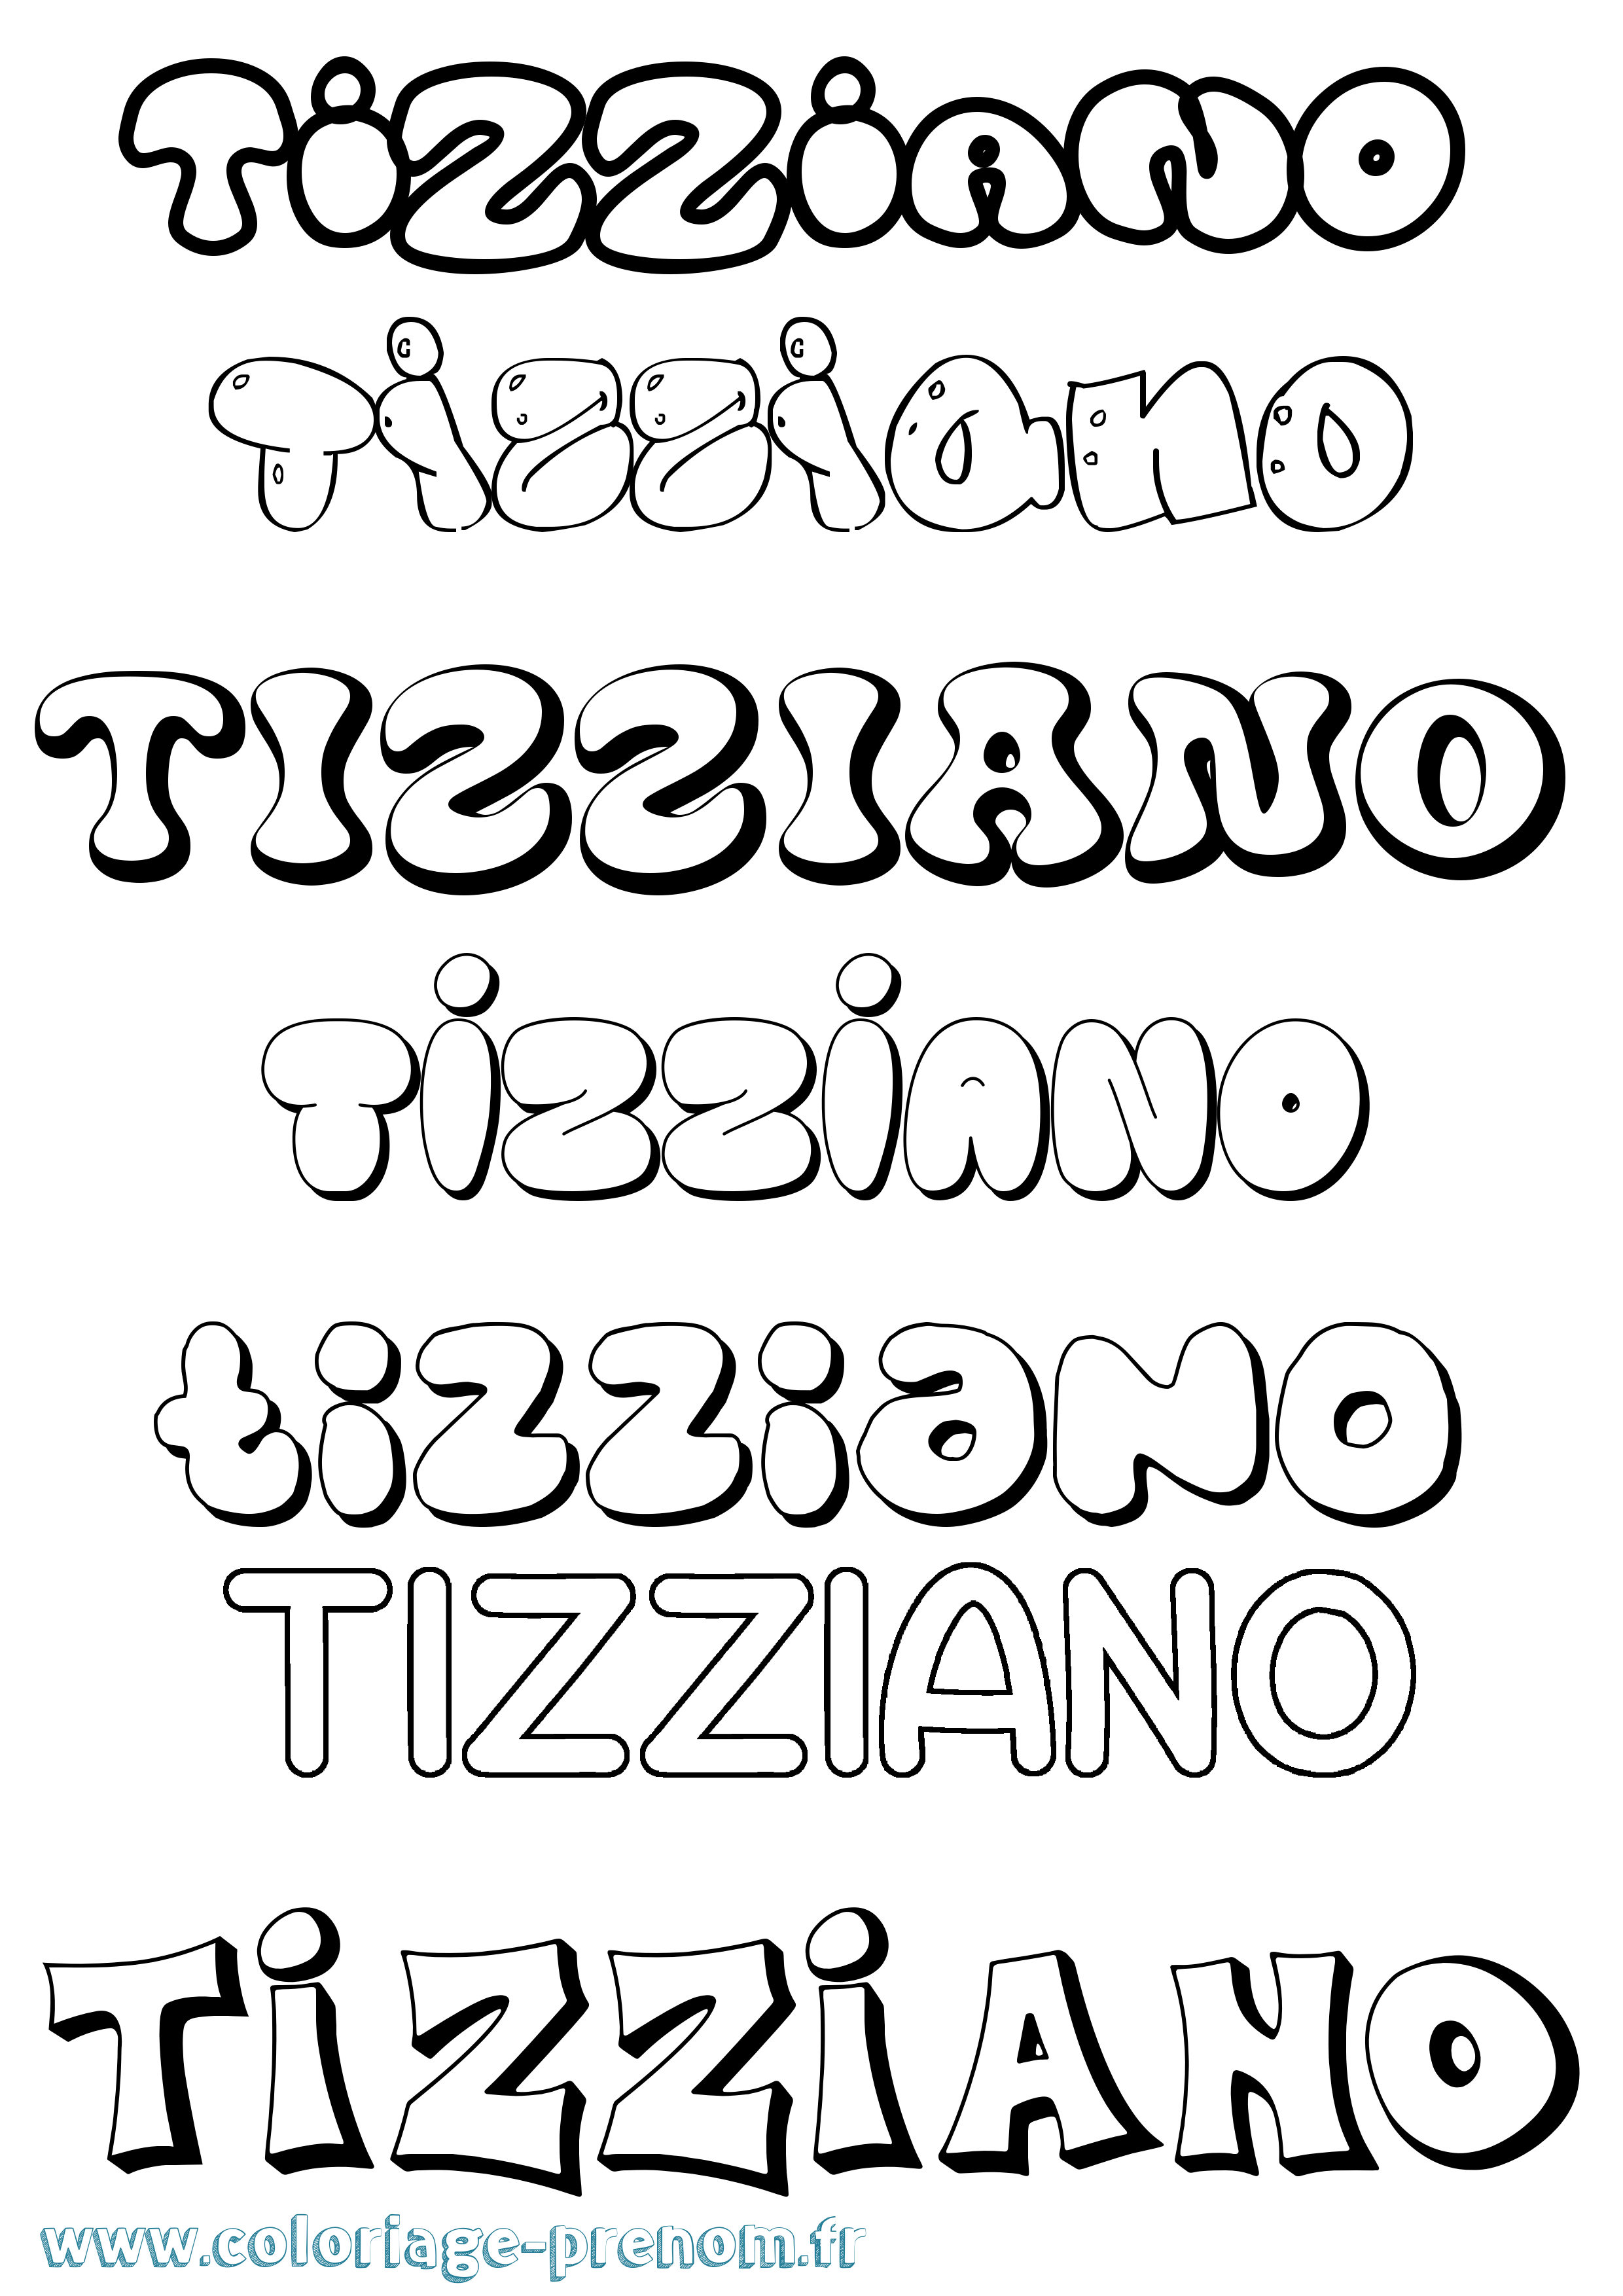 Coloriage prénom Tizziano Bubble